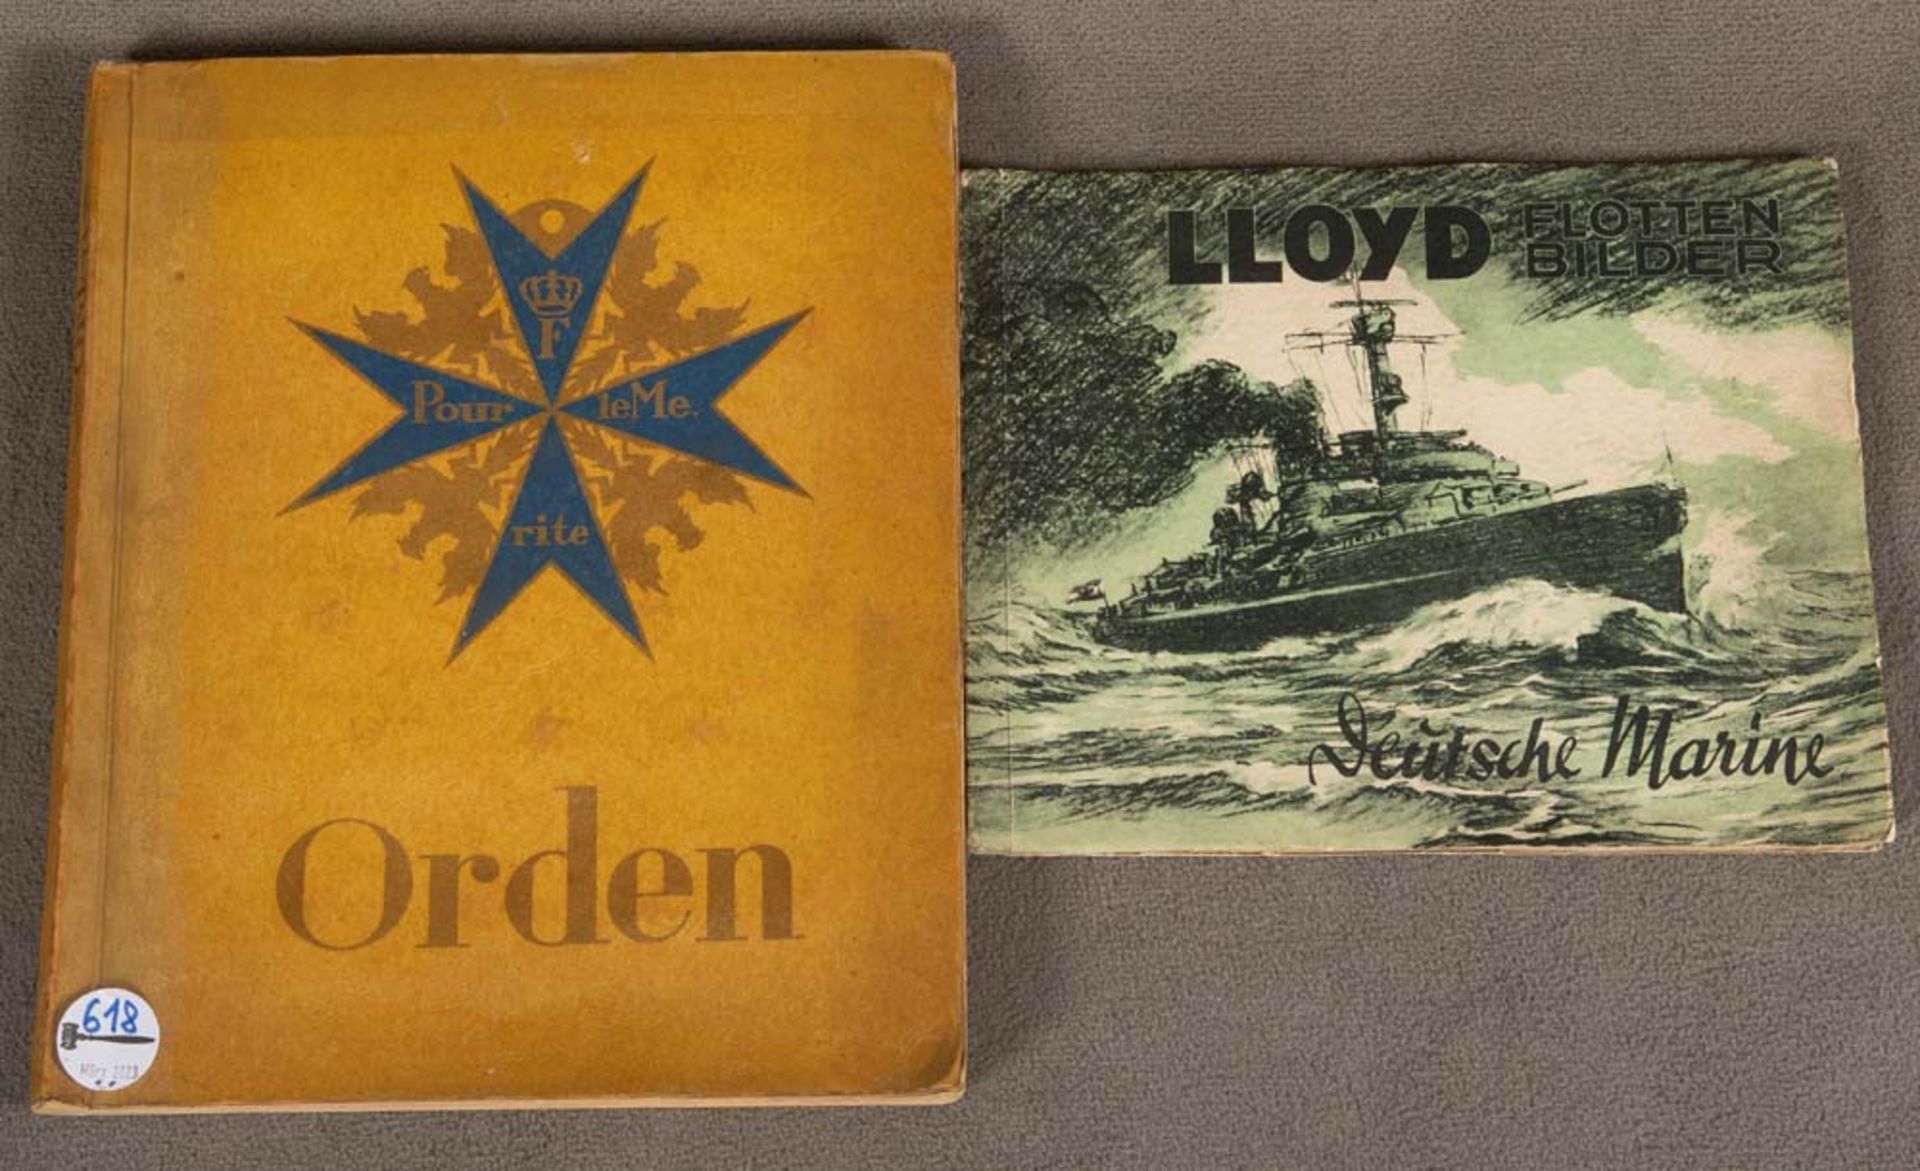 Lloyd Flottenbilder, Deutsche Marine, sowie Sammlung der bekanntesten Deutschen Orden und